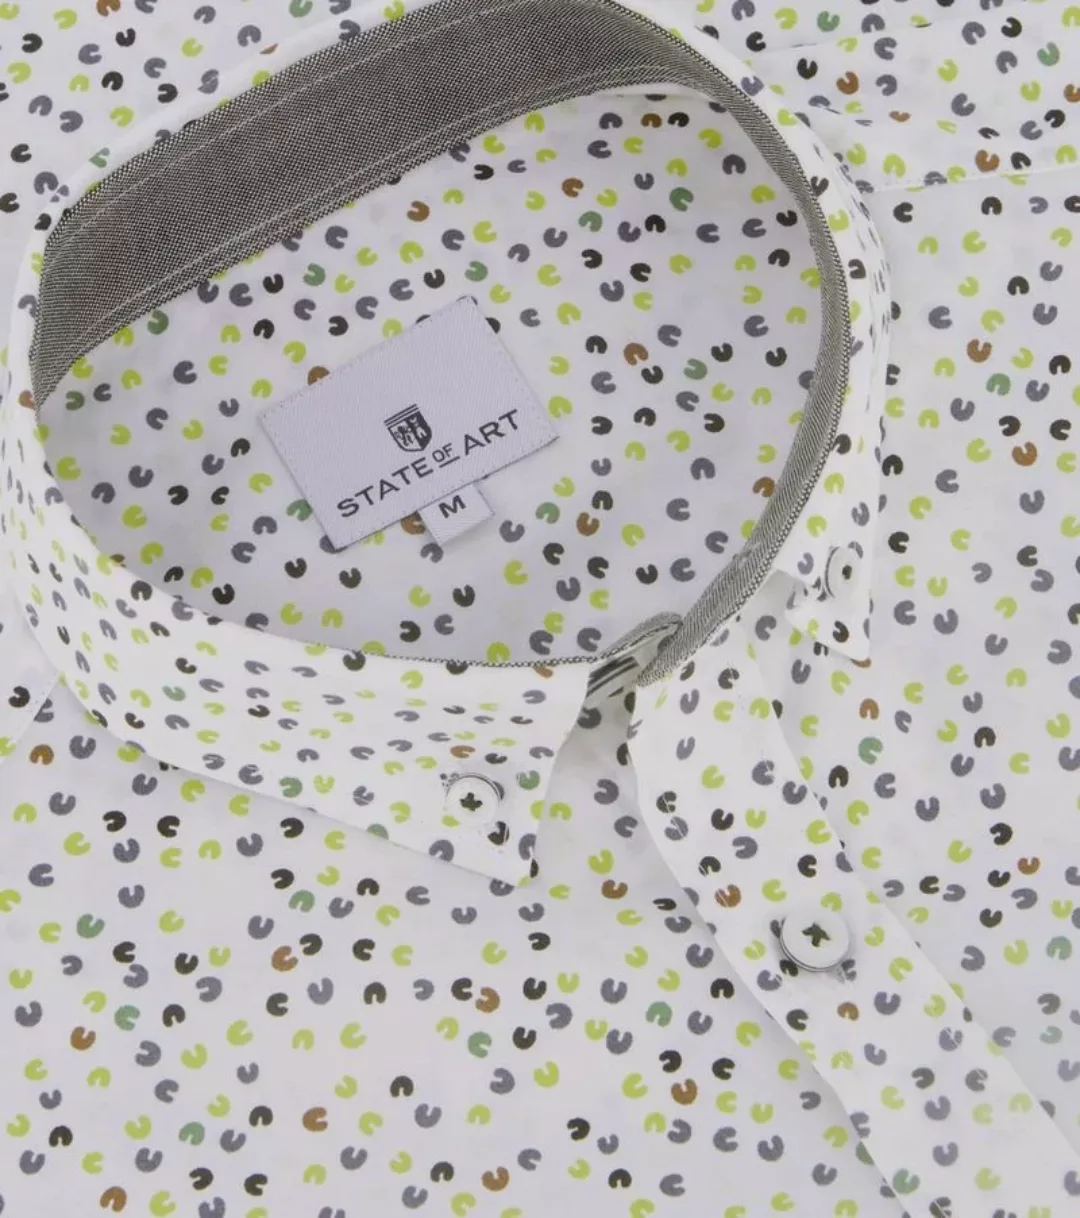 State Of Art Short Sleeve Hemd Druck Grün  - Größe M günstig online kaufen